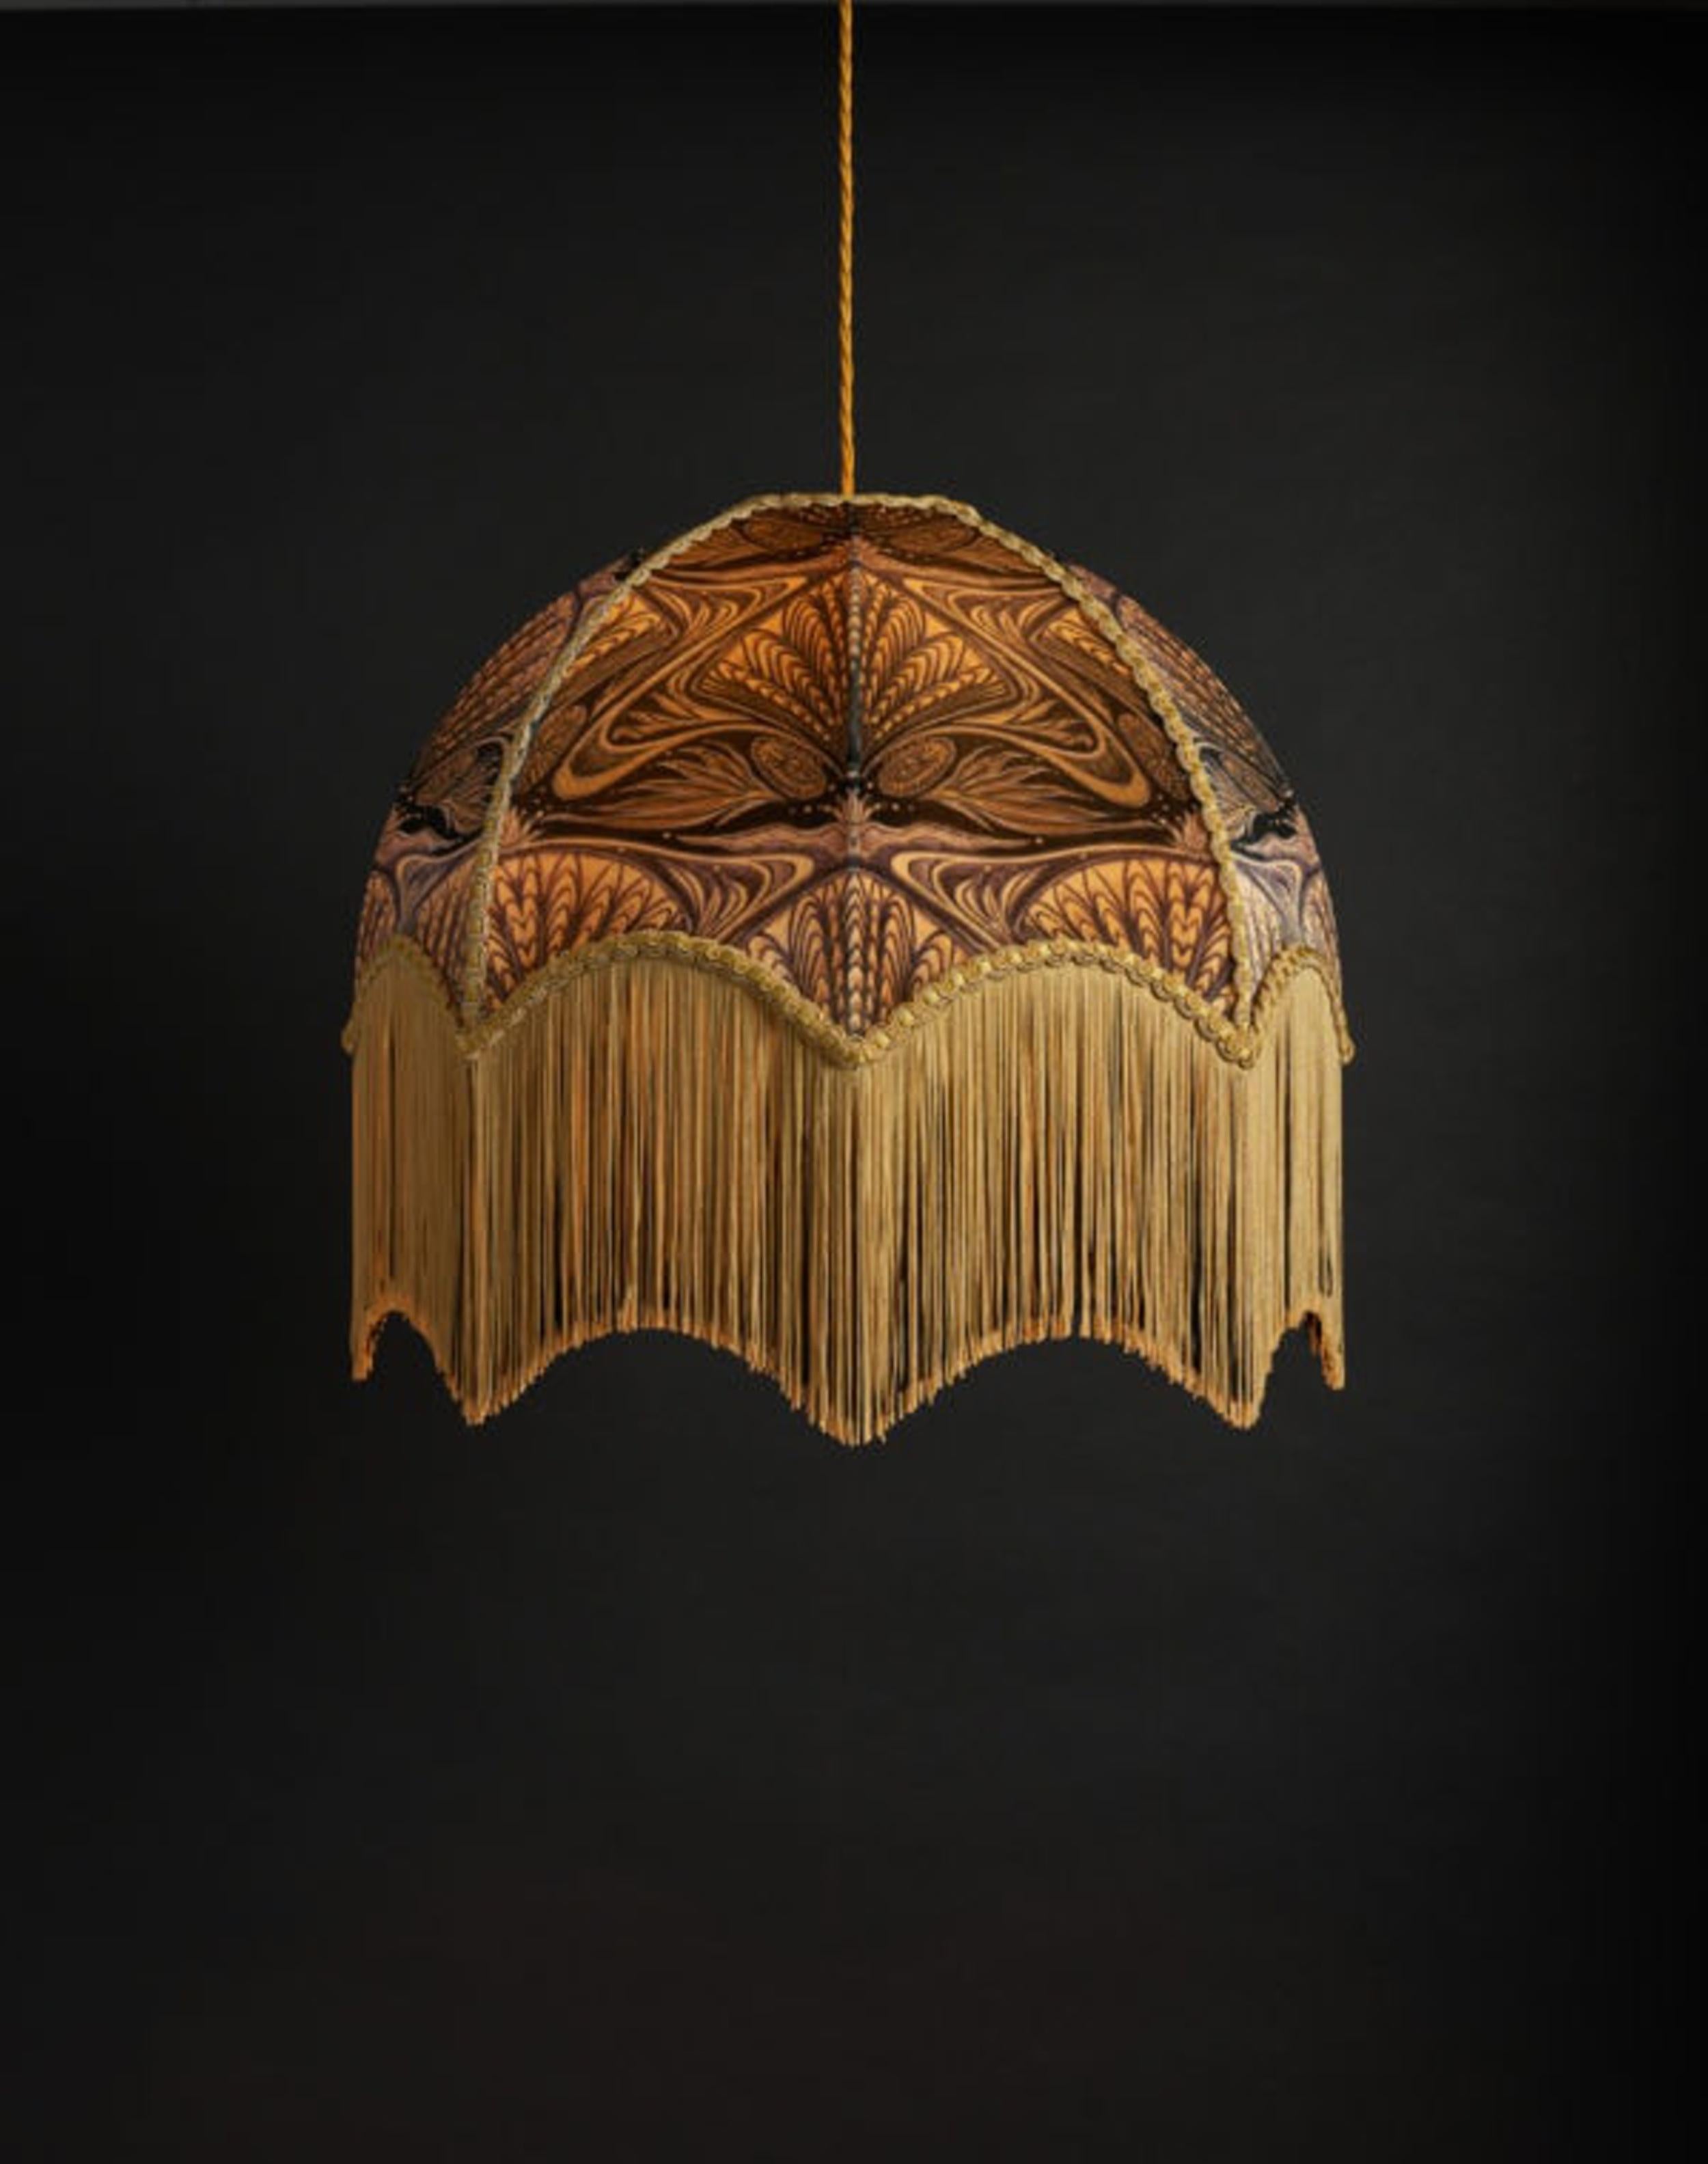 Oyster est notre design inspiré de l'Art nouveau, avec un motif complexe d'or, de noir tendre et d'une teinte légèrement violacée.

Les abat-jour d'Anna Hayman constituent une pièce maîtresse fantastique et s'adaptent aussi bien à un pied de lampe